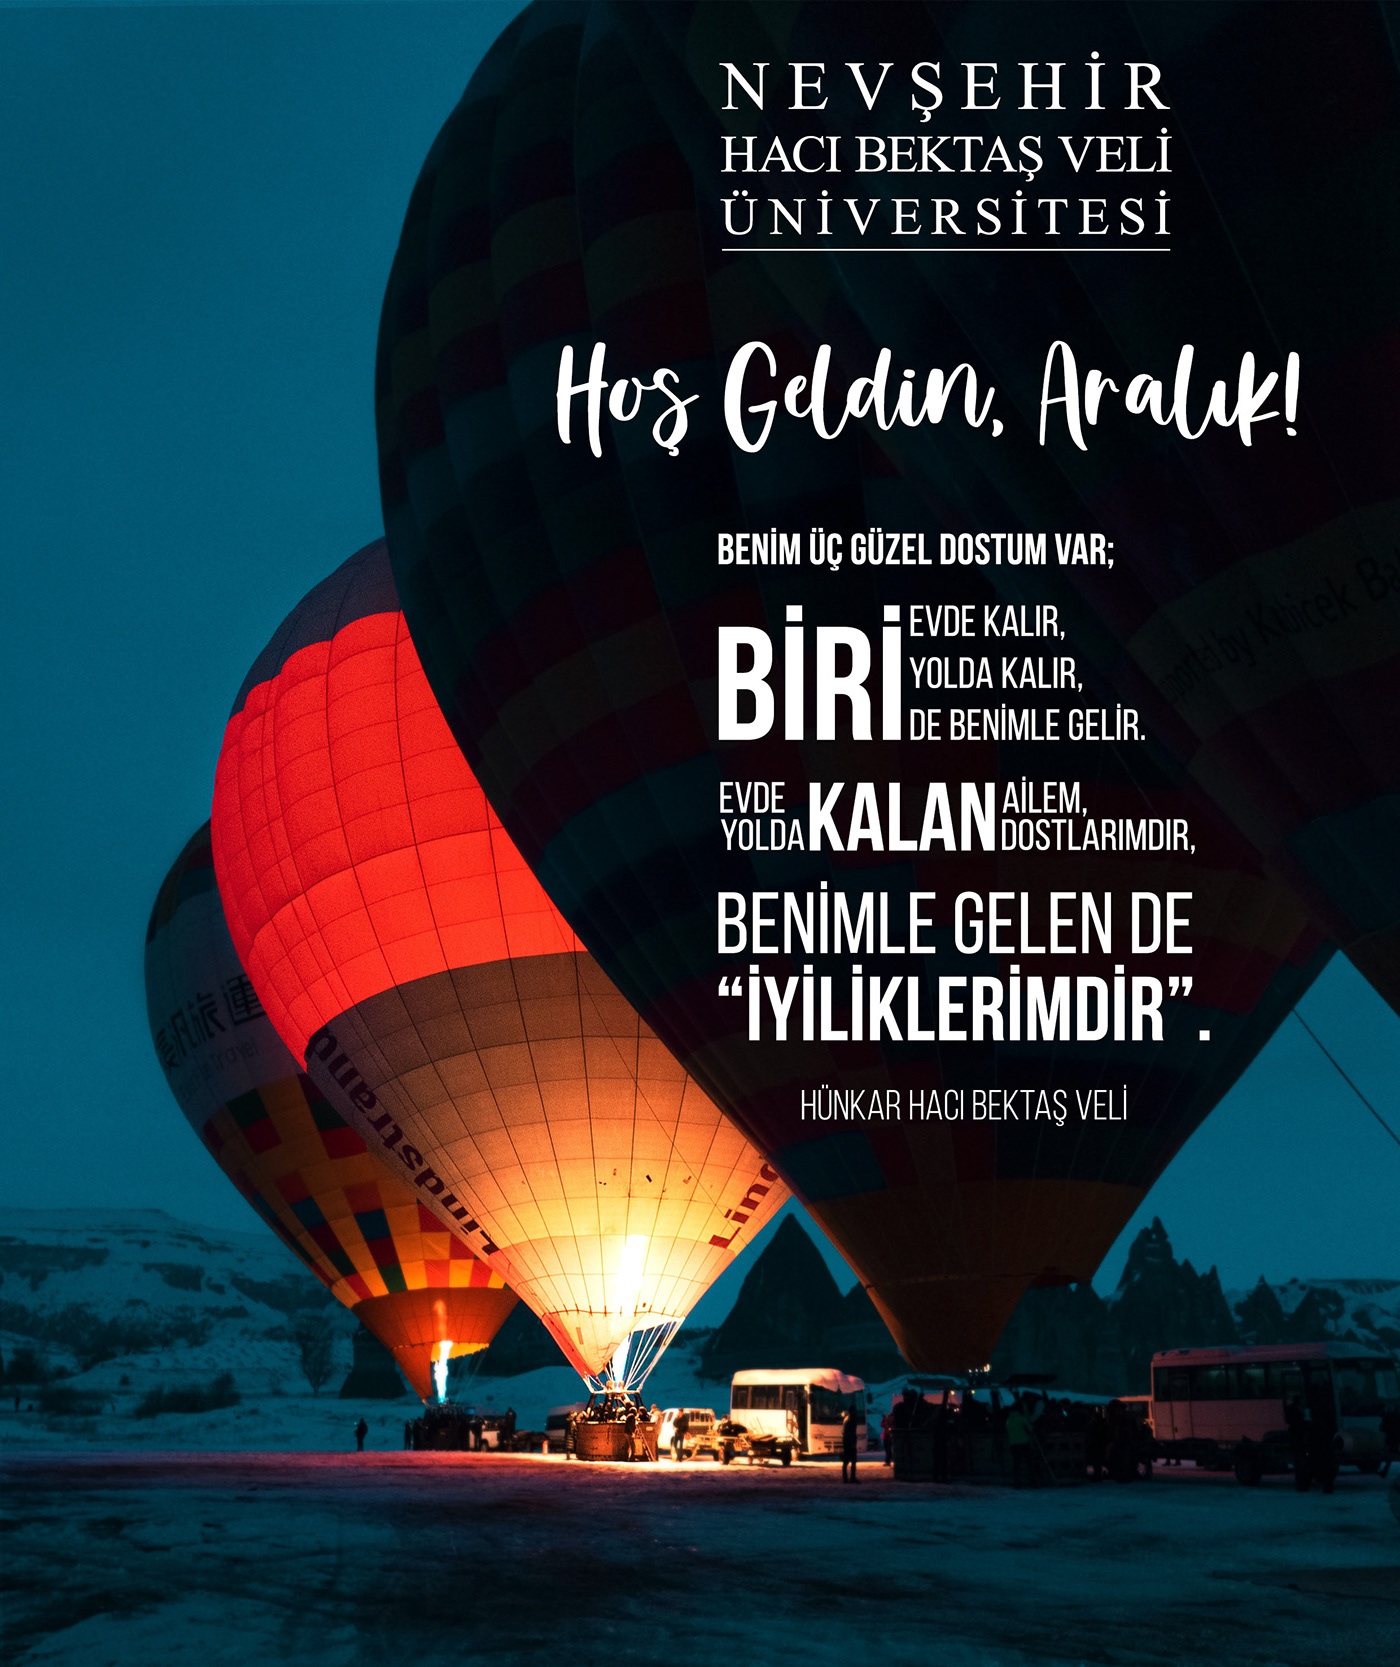 cappadocia Kapadokya nevşehir Nevşehir Üniversitesi hacıbektasveli sosyalmedya Socialmedia Social media post